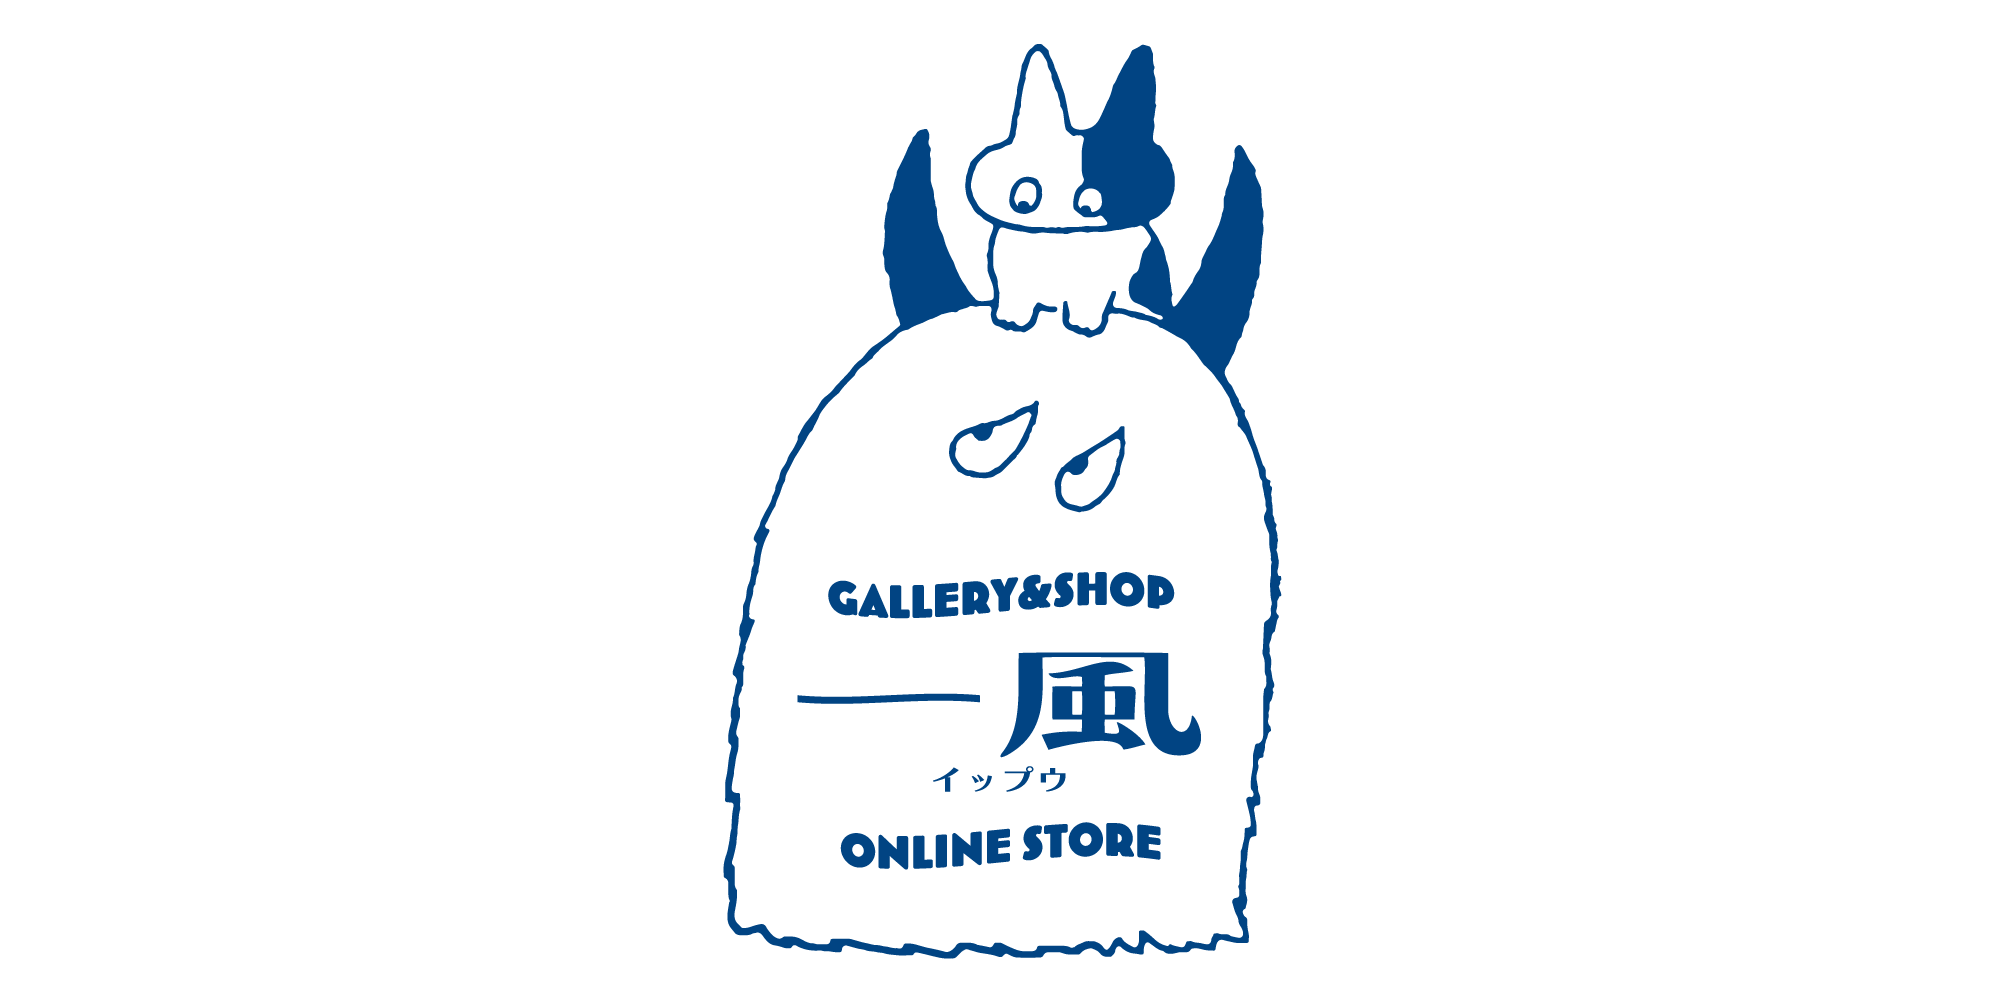 gallery&shop一風オンラインストア